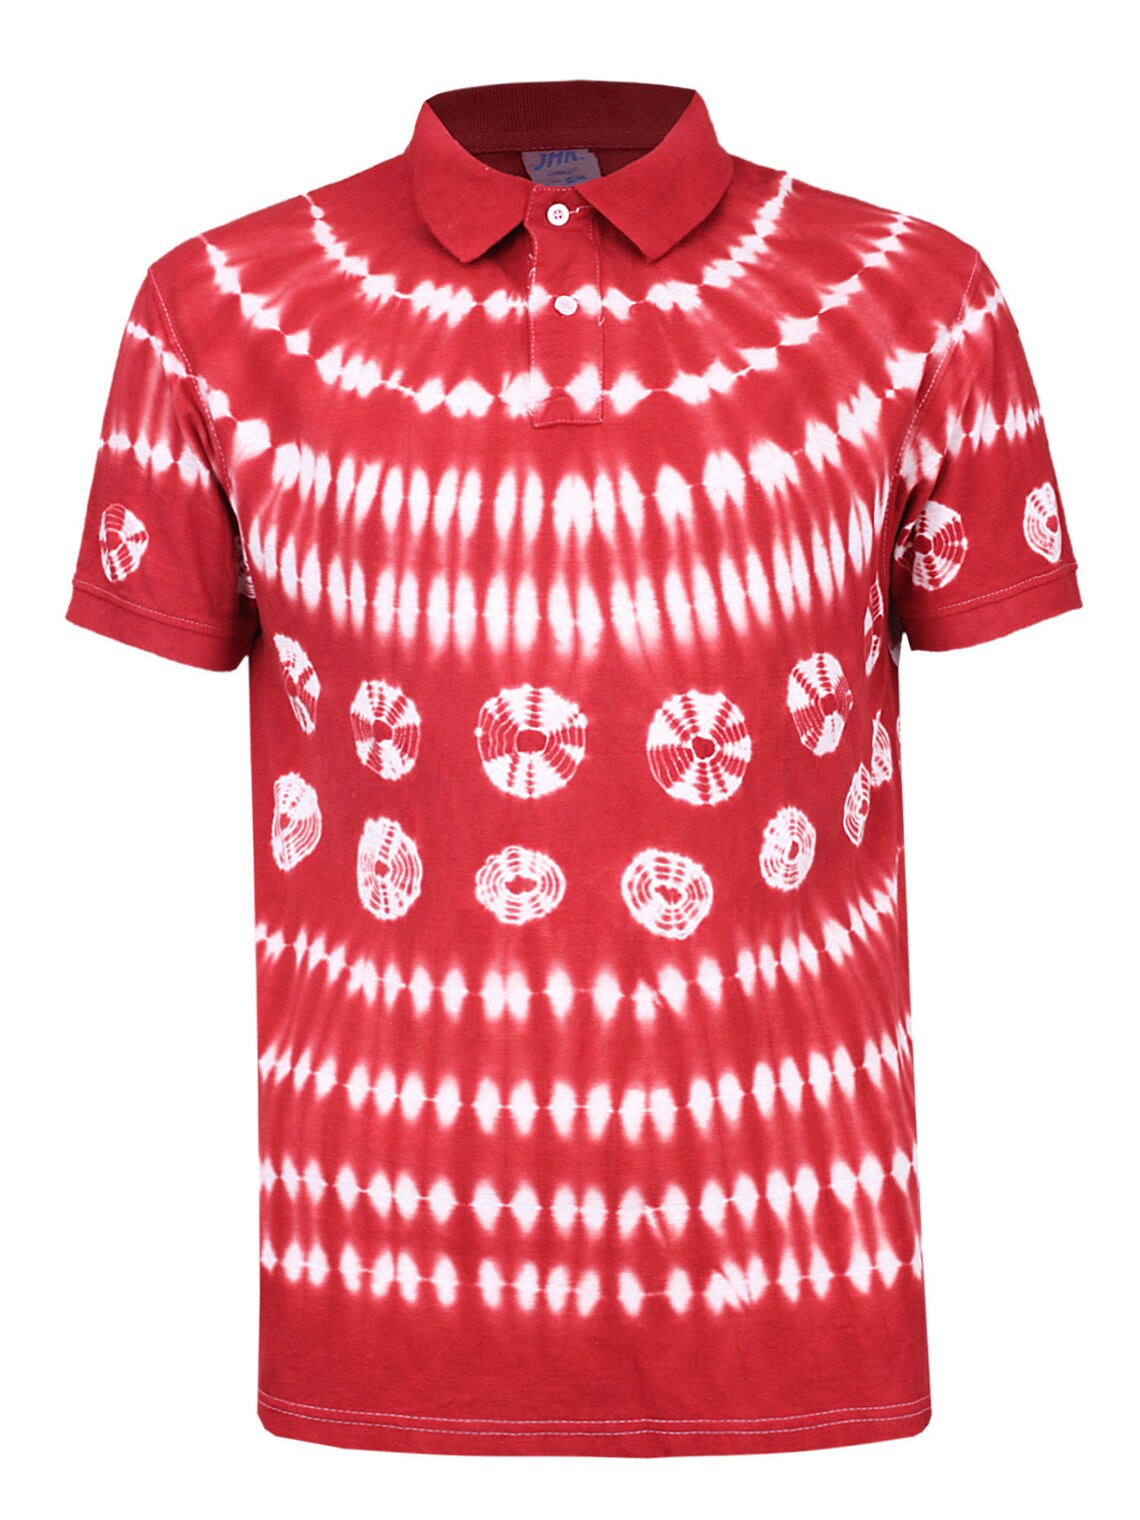 Red and White Adire T-shirtmen's Clothingadire | Etsy